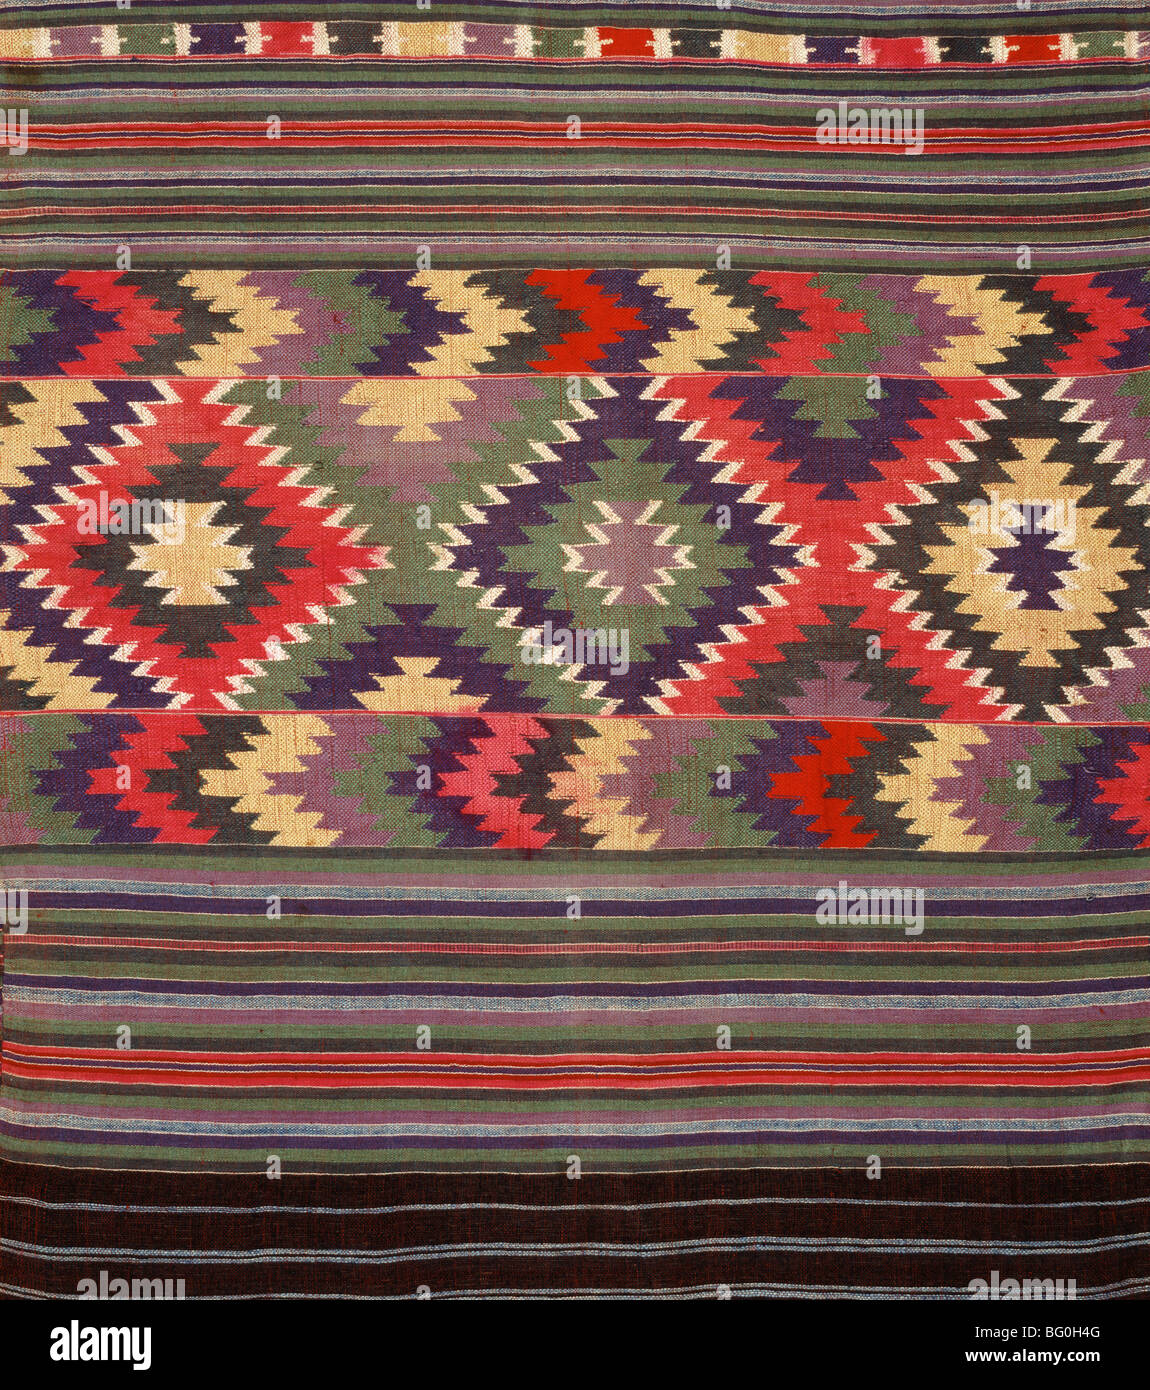 Details of Tai Lu Textiles, Thailand, Southeast Asia, Asia Stock Photo